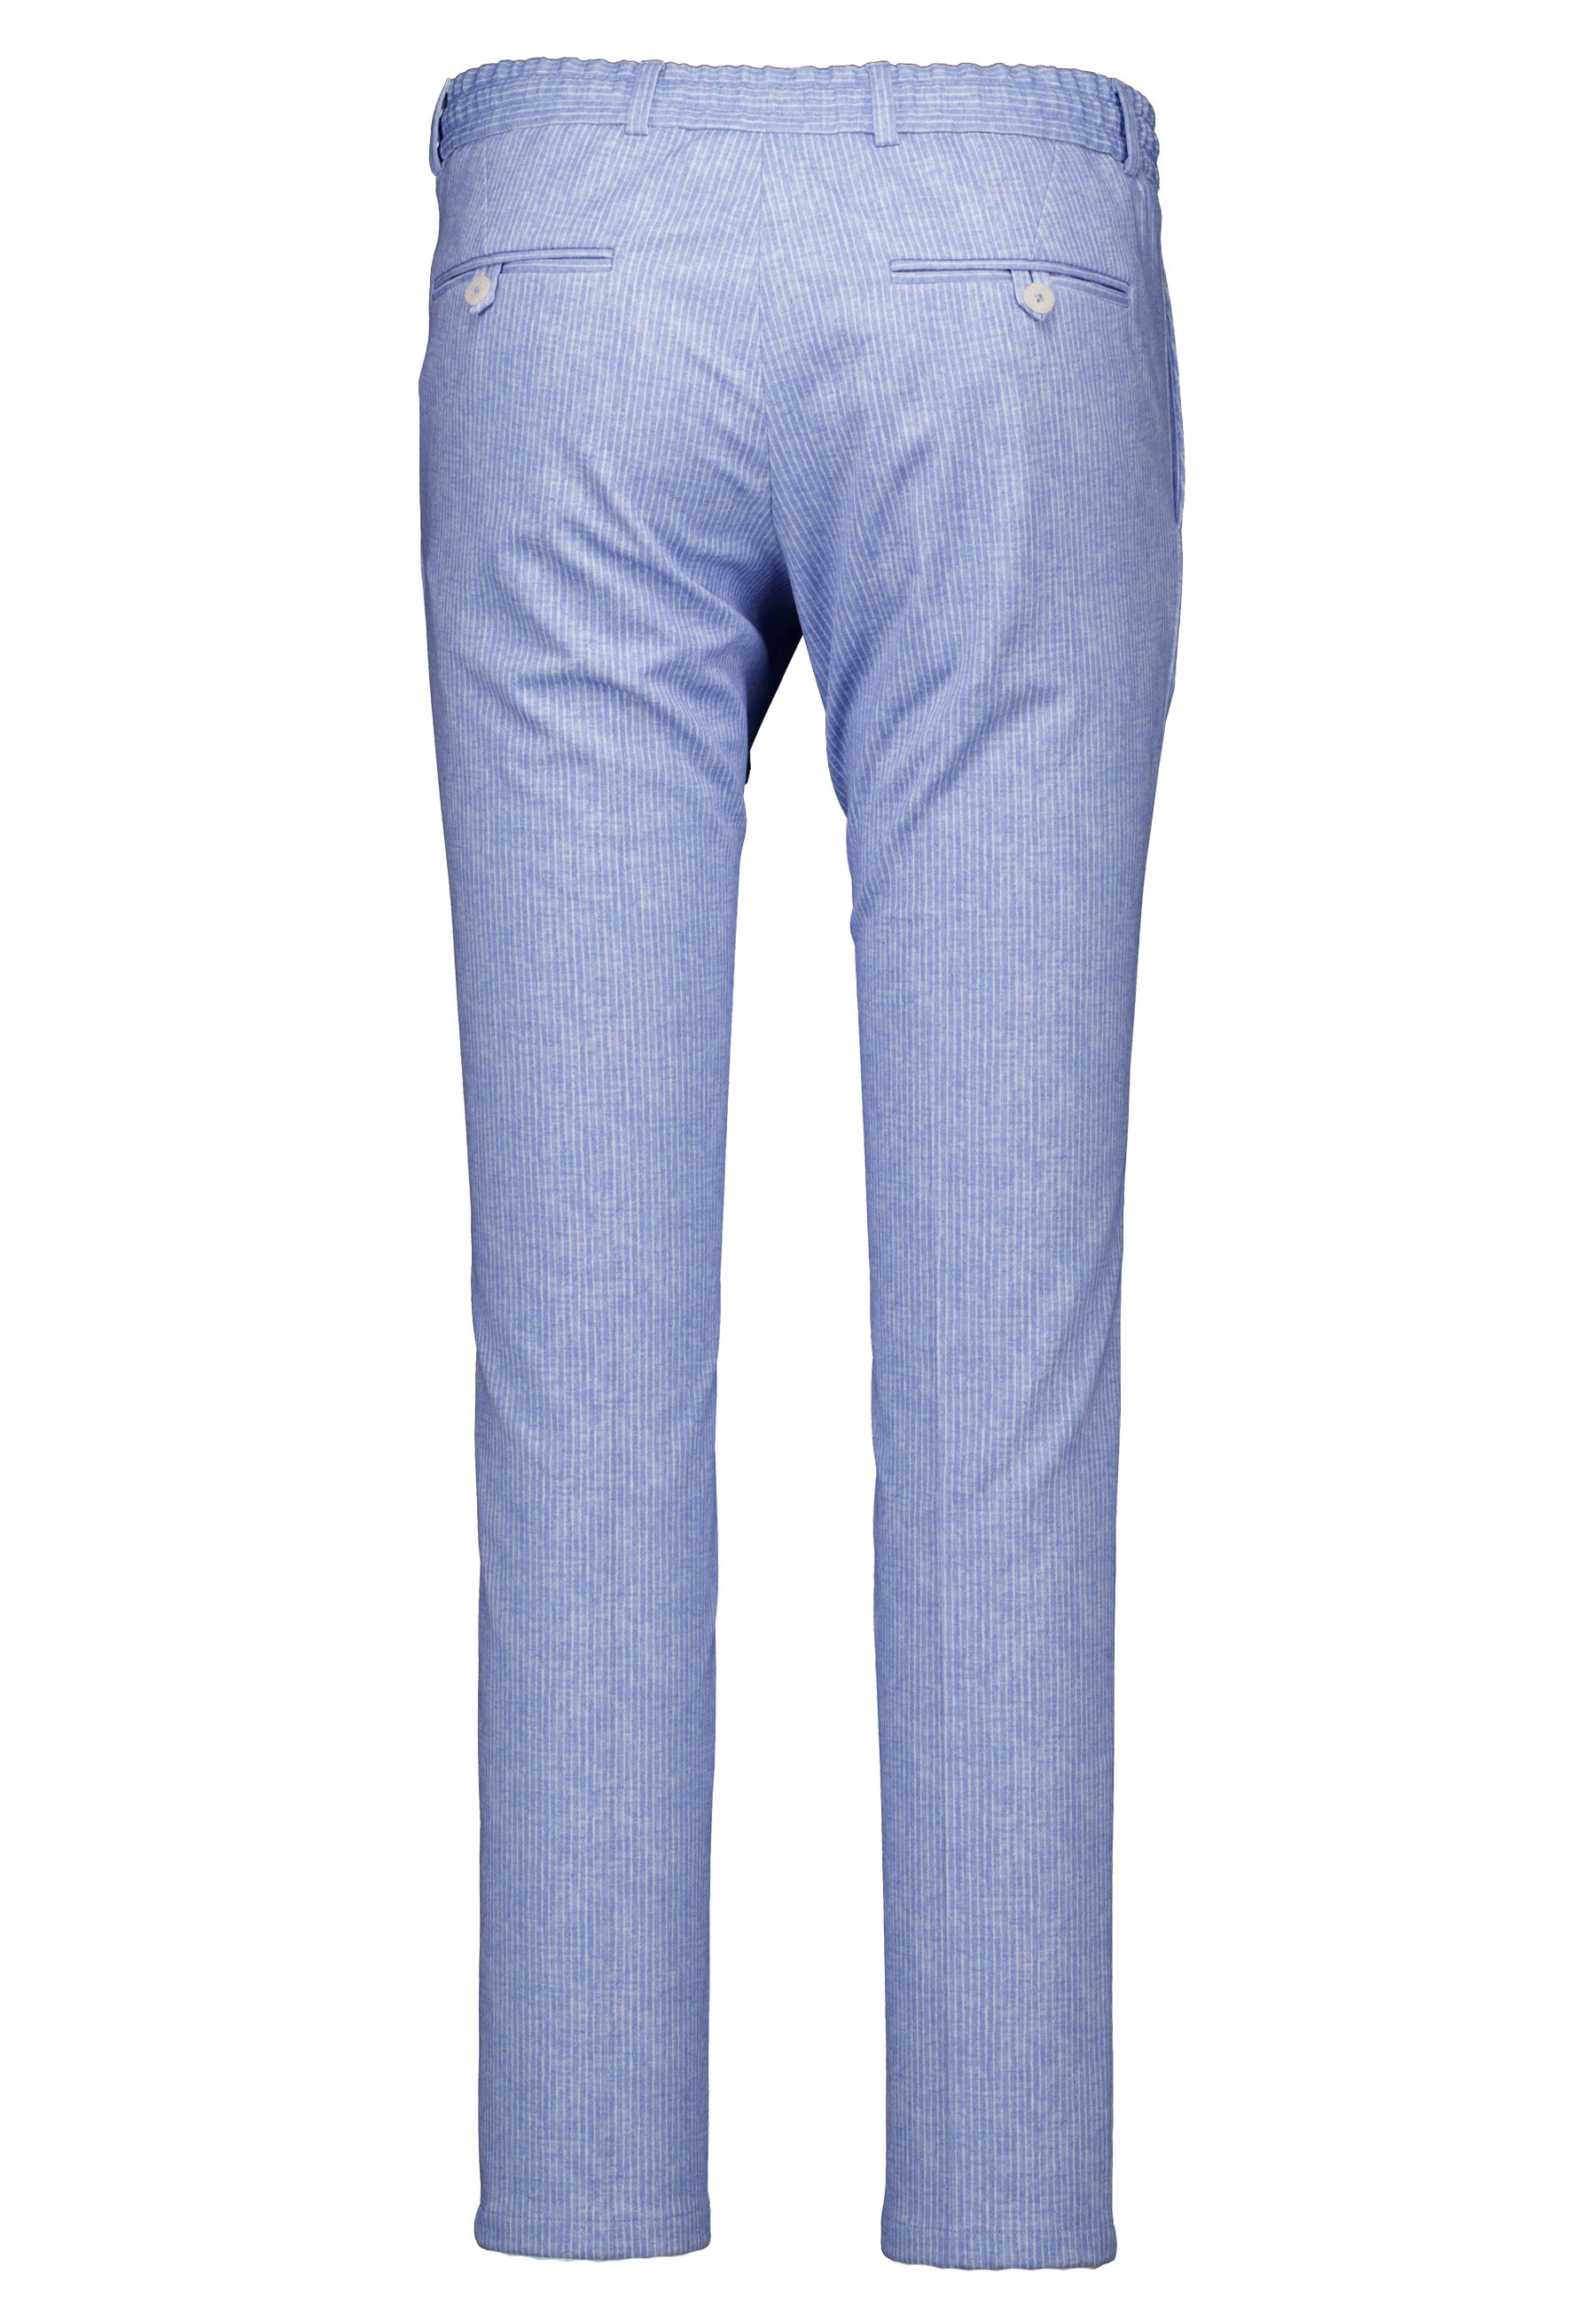 Dispartaflex pantalons lichtblauw